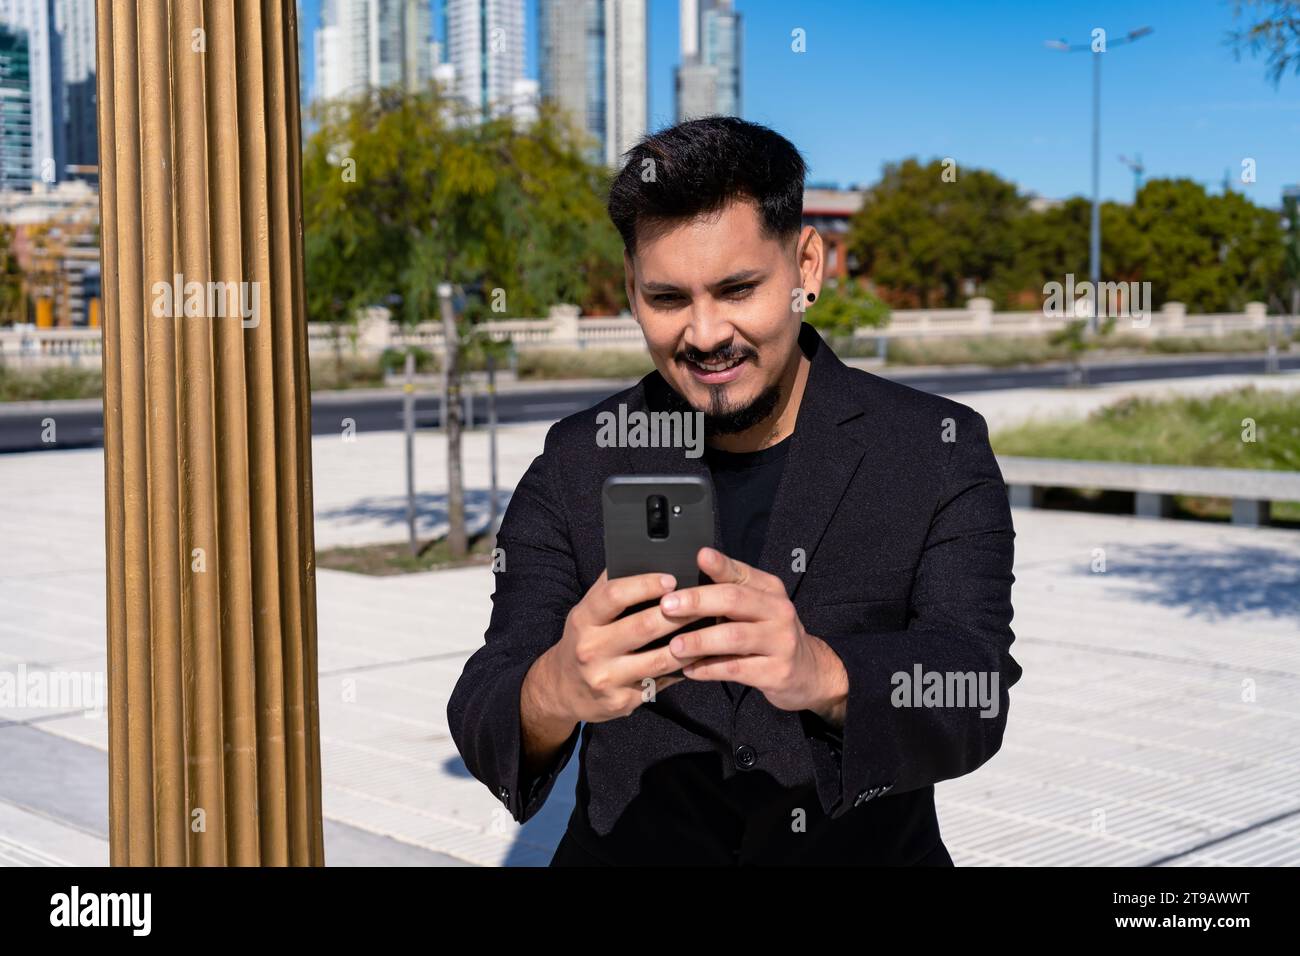 Primo piano di un giovane latinoamericano sorridente che controlla e risponde ai messaggi con il suo cellulare o smartphone in una piazza pubblica. Foto Stock